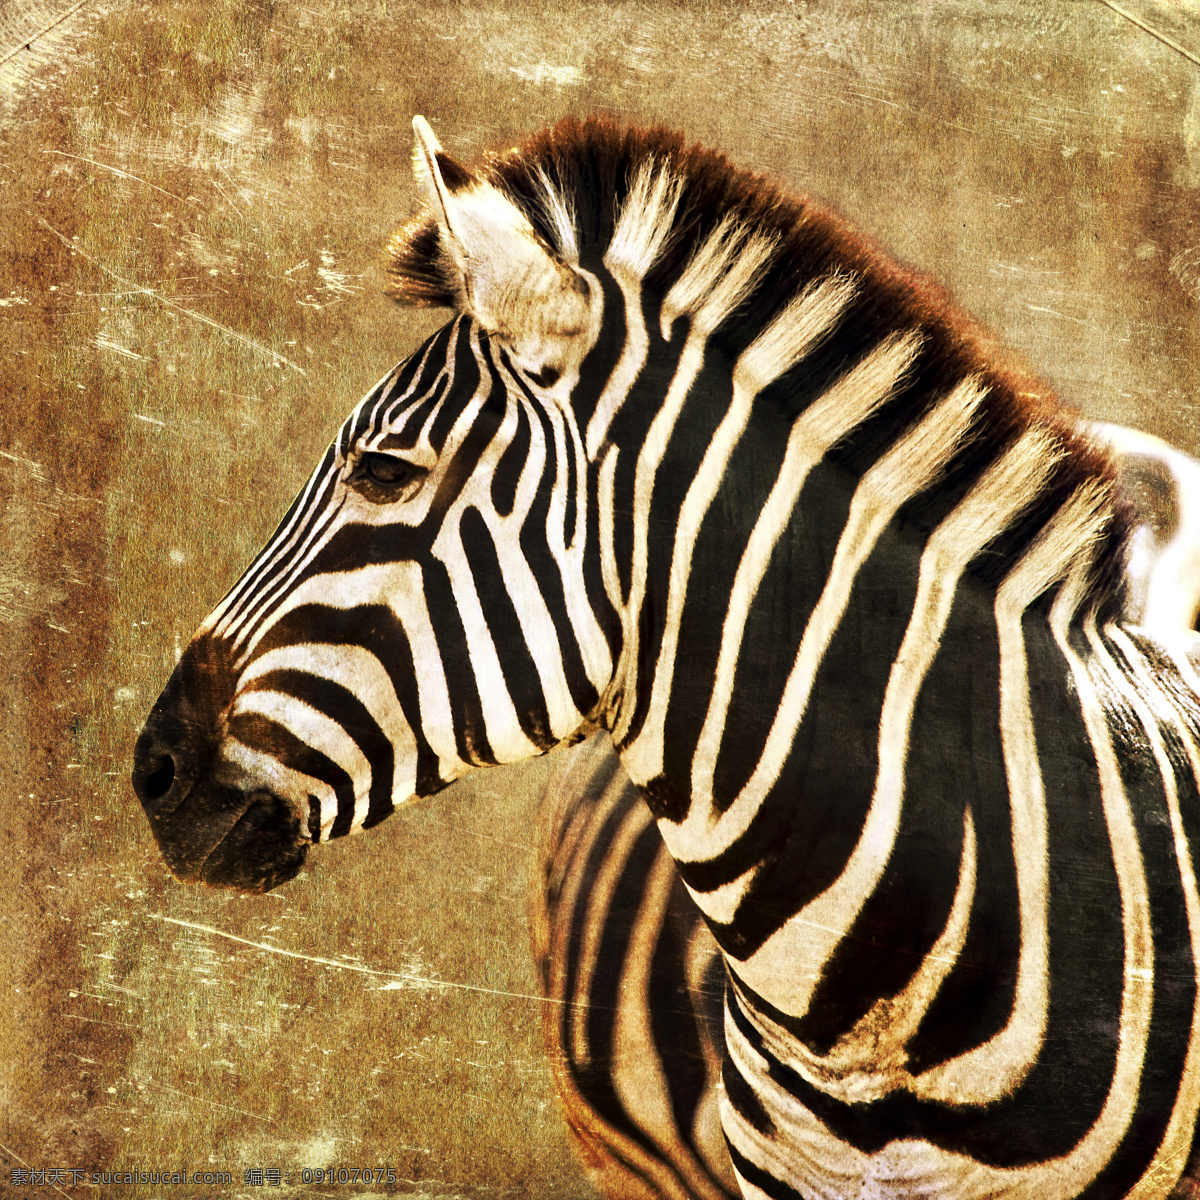 斑马 非洲 野生动物 野生动物园 动物园 非洲动物 非洲野生动物 非洲斑马 非洲草原 非洲大草原 哺乳动物 非洲草原动物 斑马纹 马 动物 生物世界